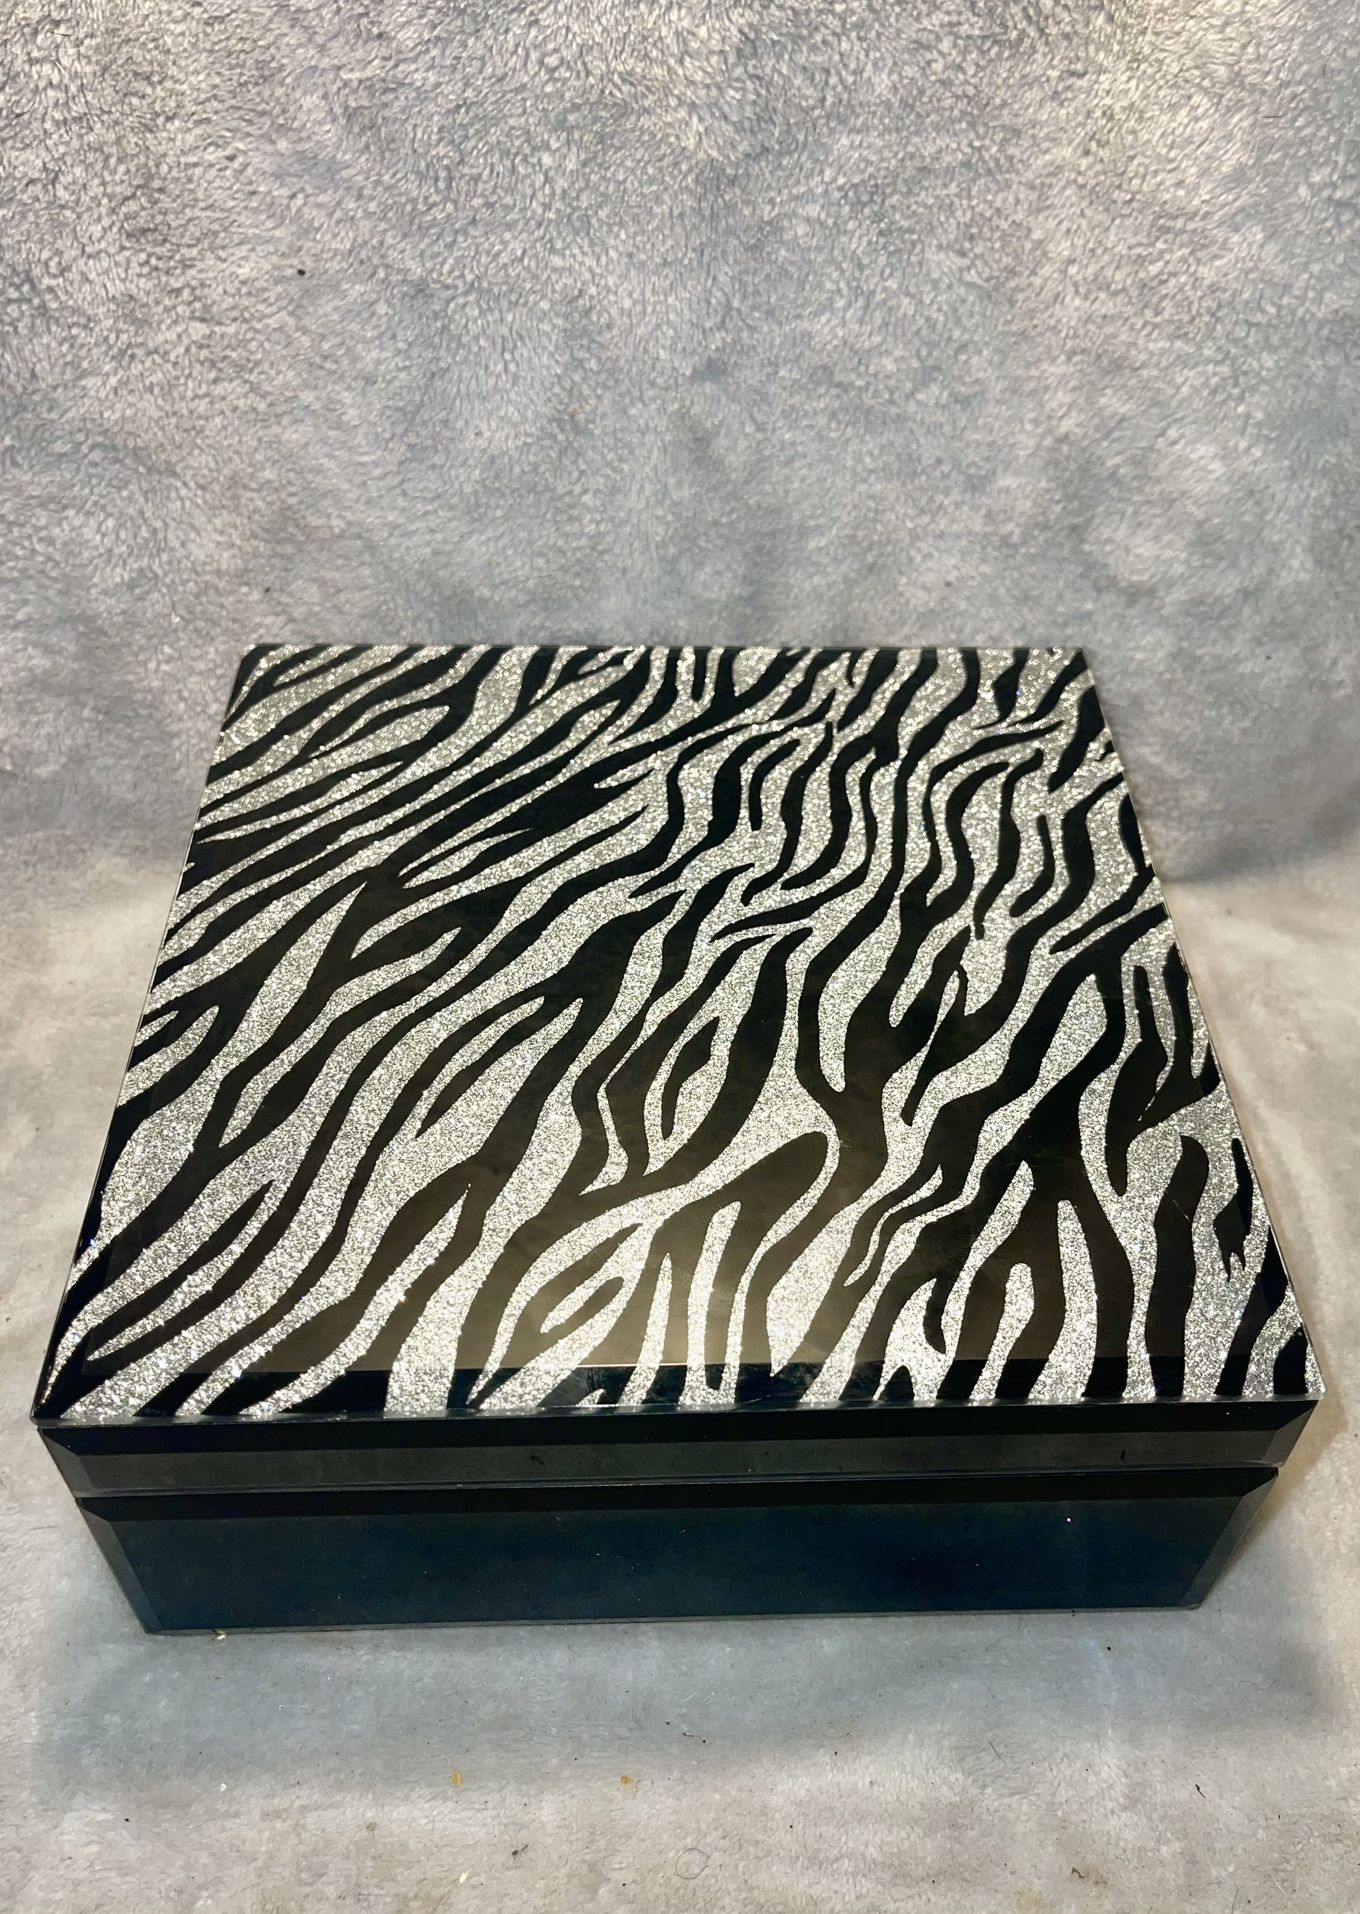 Zebra SPARKLEY Glass jewelry box. No chips or breaks.